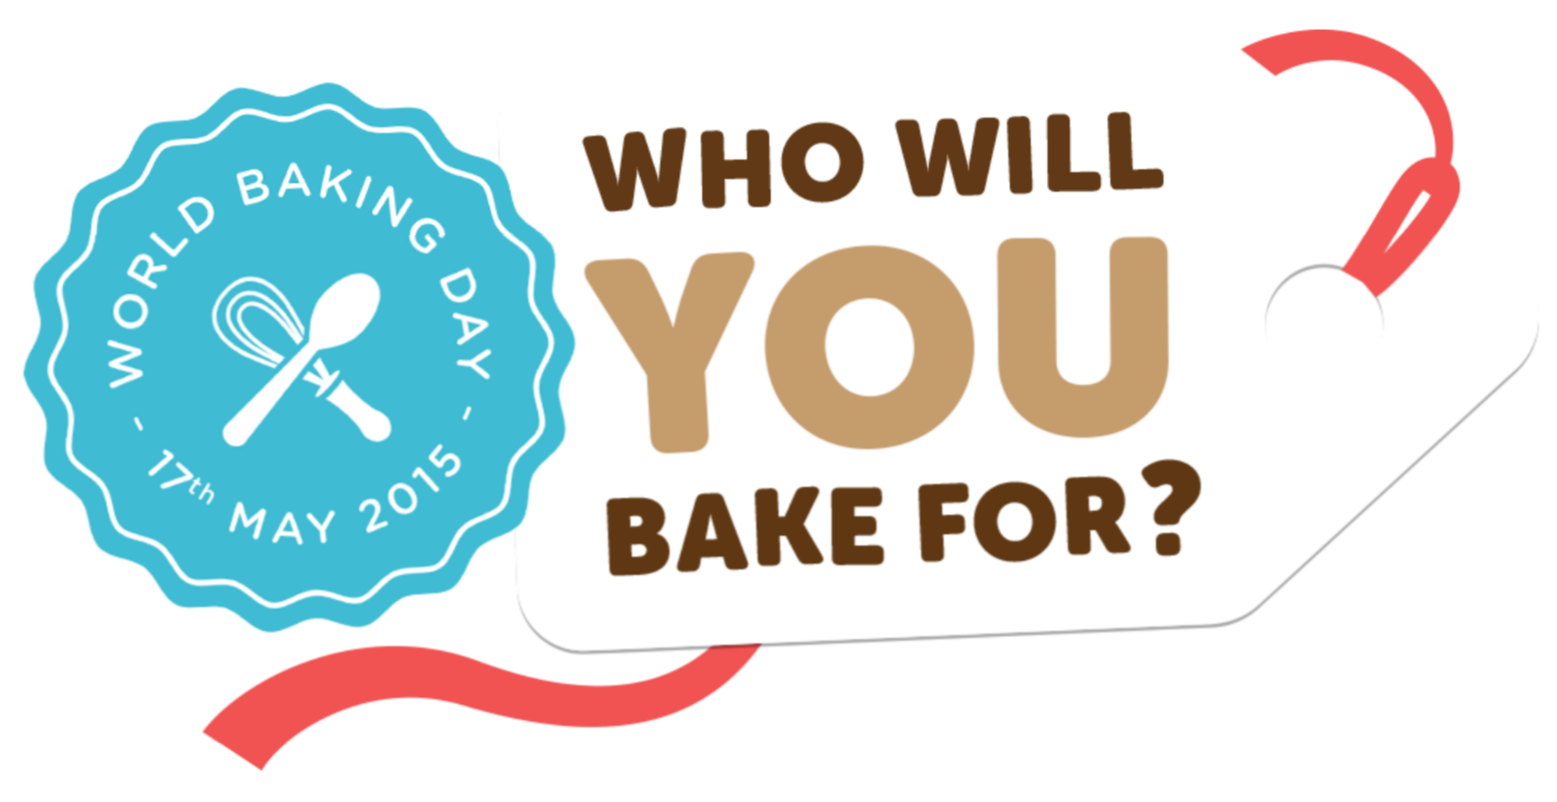 Enter day. Всемирный день выпечки (World Baking Day). Картинки World Baking Day). Sponsor Baked. Всемирный день выпечки (World Baking Day) - третье воскресенье мая.